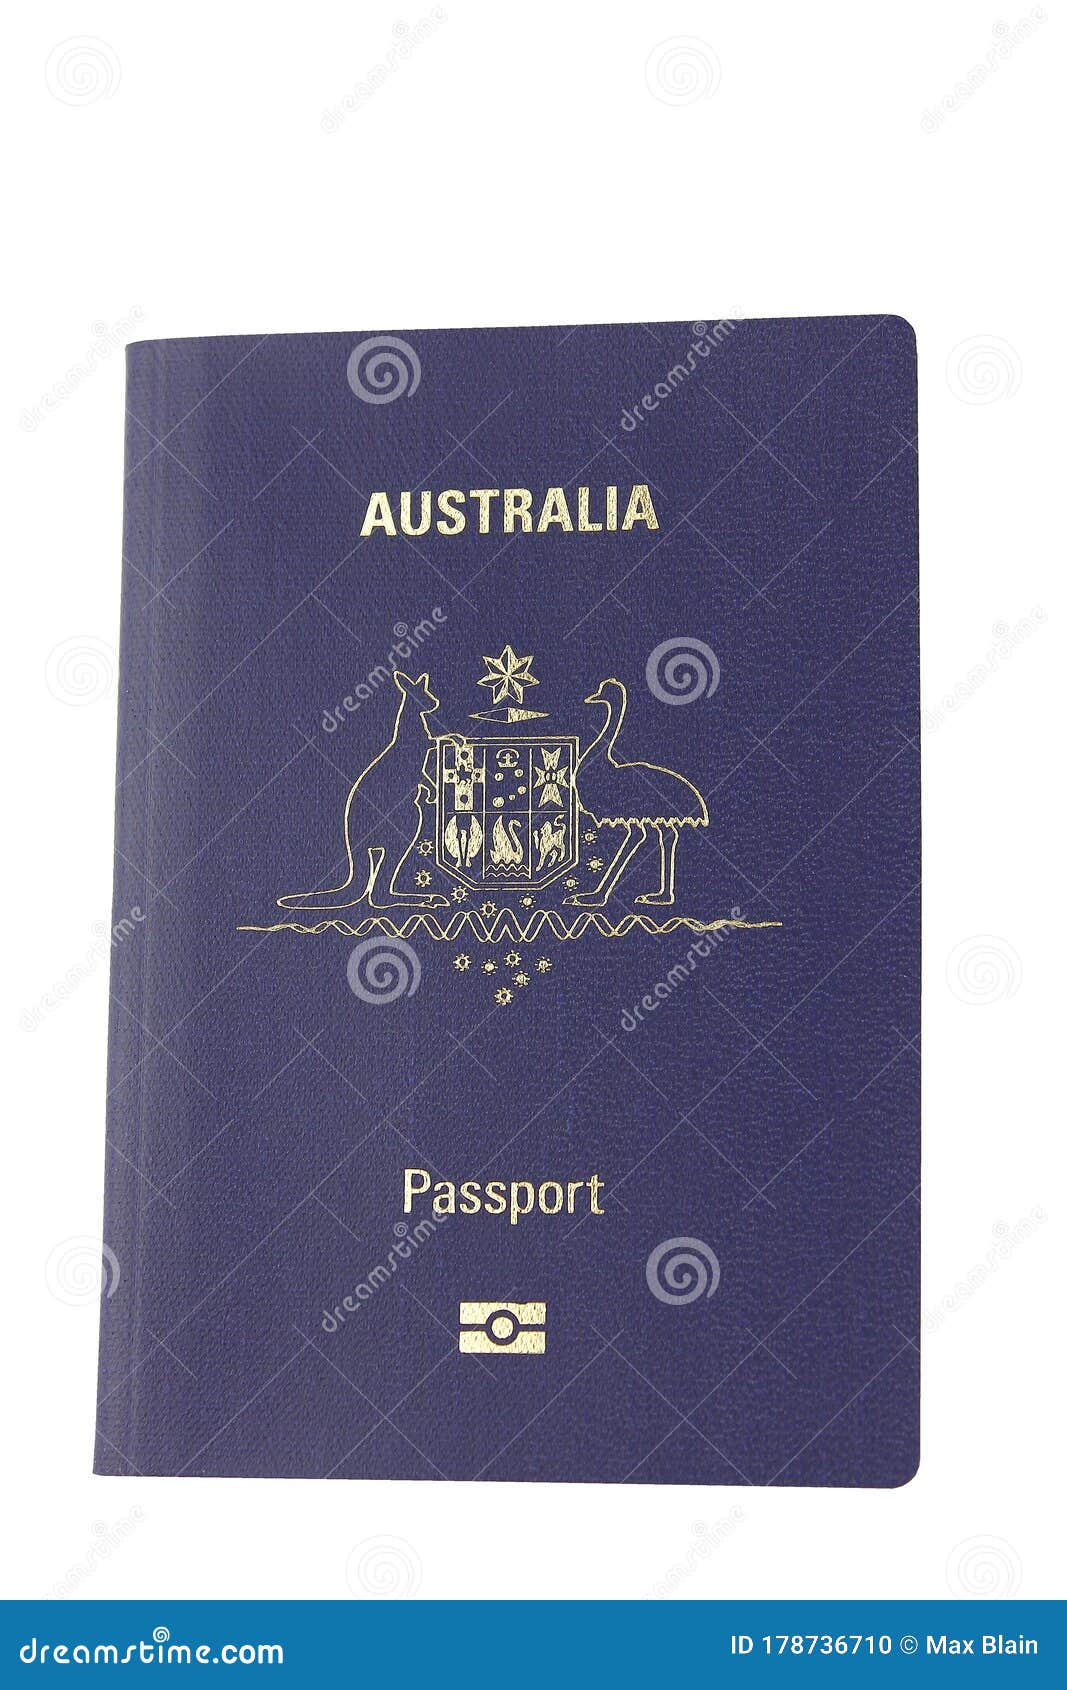 澳洲推出新版R系列护照 安全与防止伪造性能更高 - 澳洲财经新闻 | 澳洲财经见闻 - 用资讯创造财富